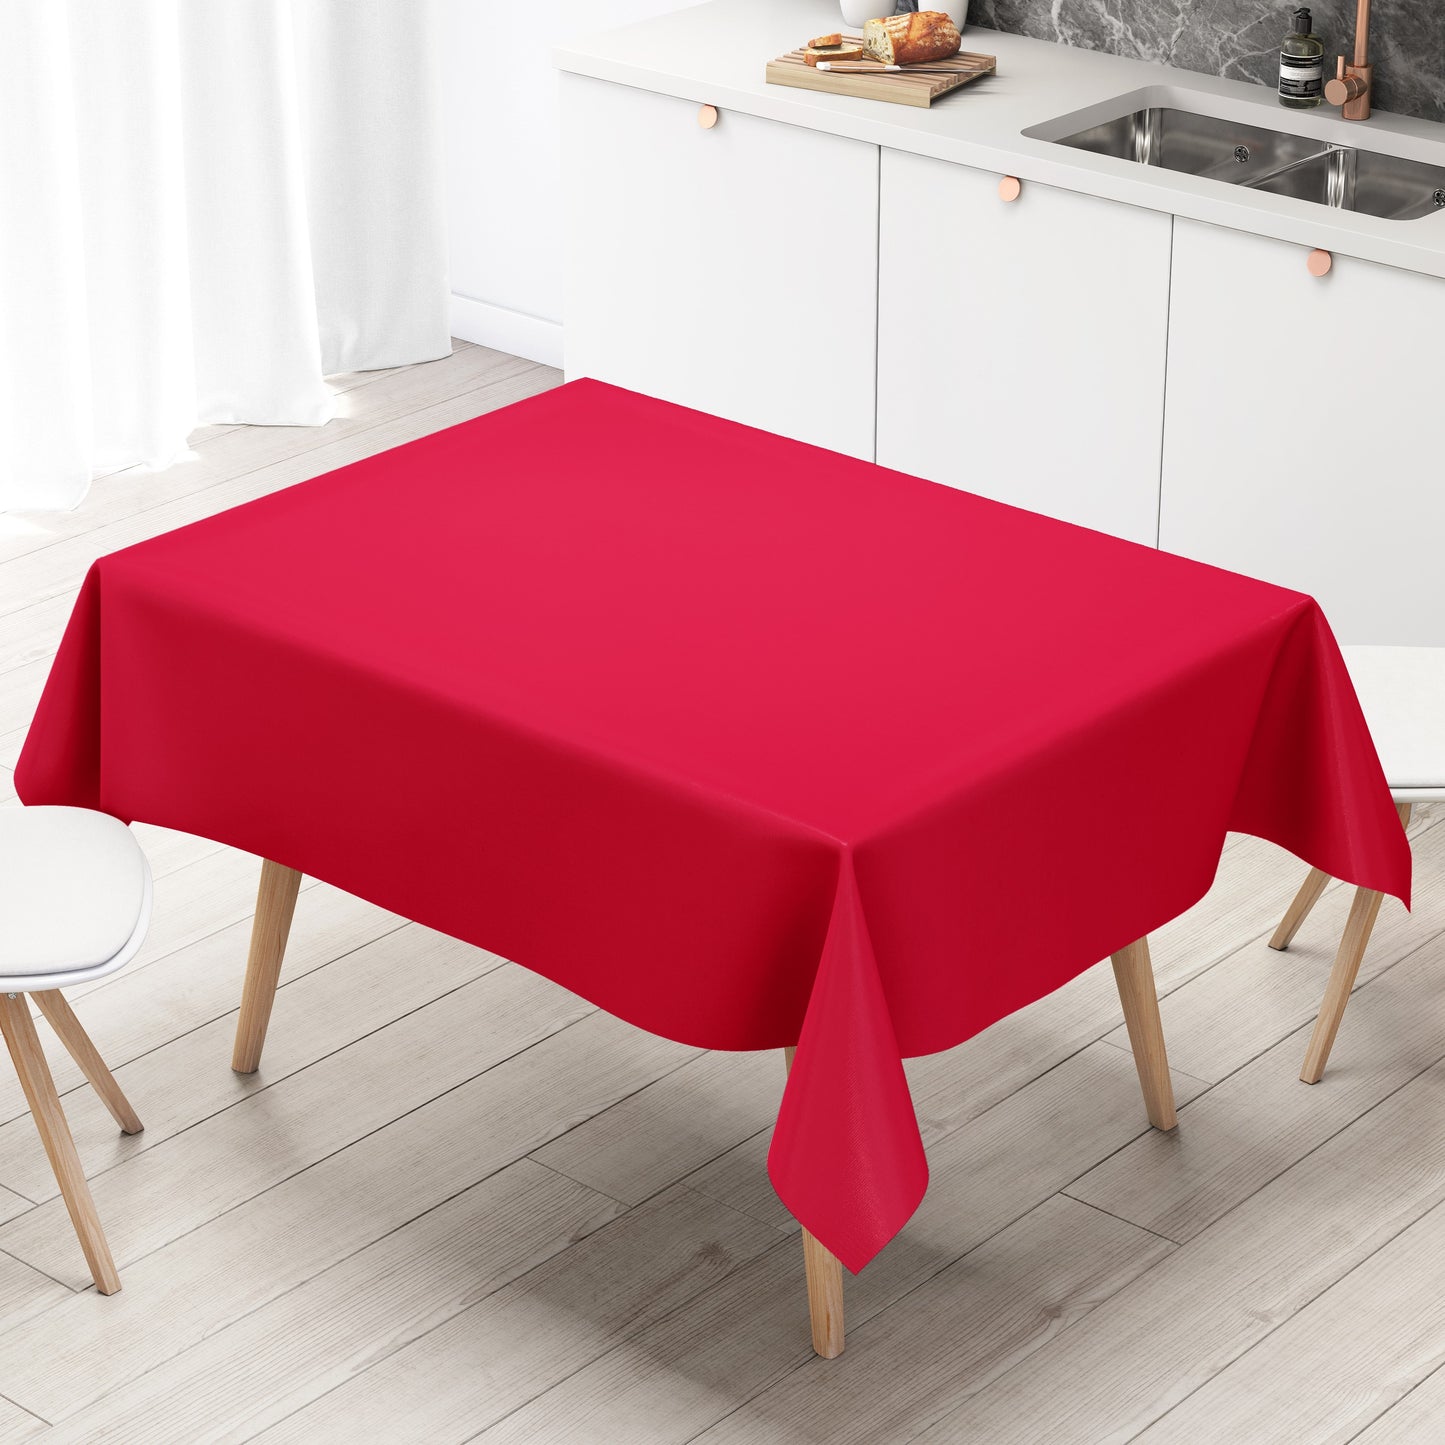 Wachstuch Tischdecke uni 186 einfarbig rot eckig rund oval